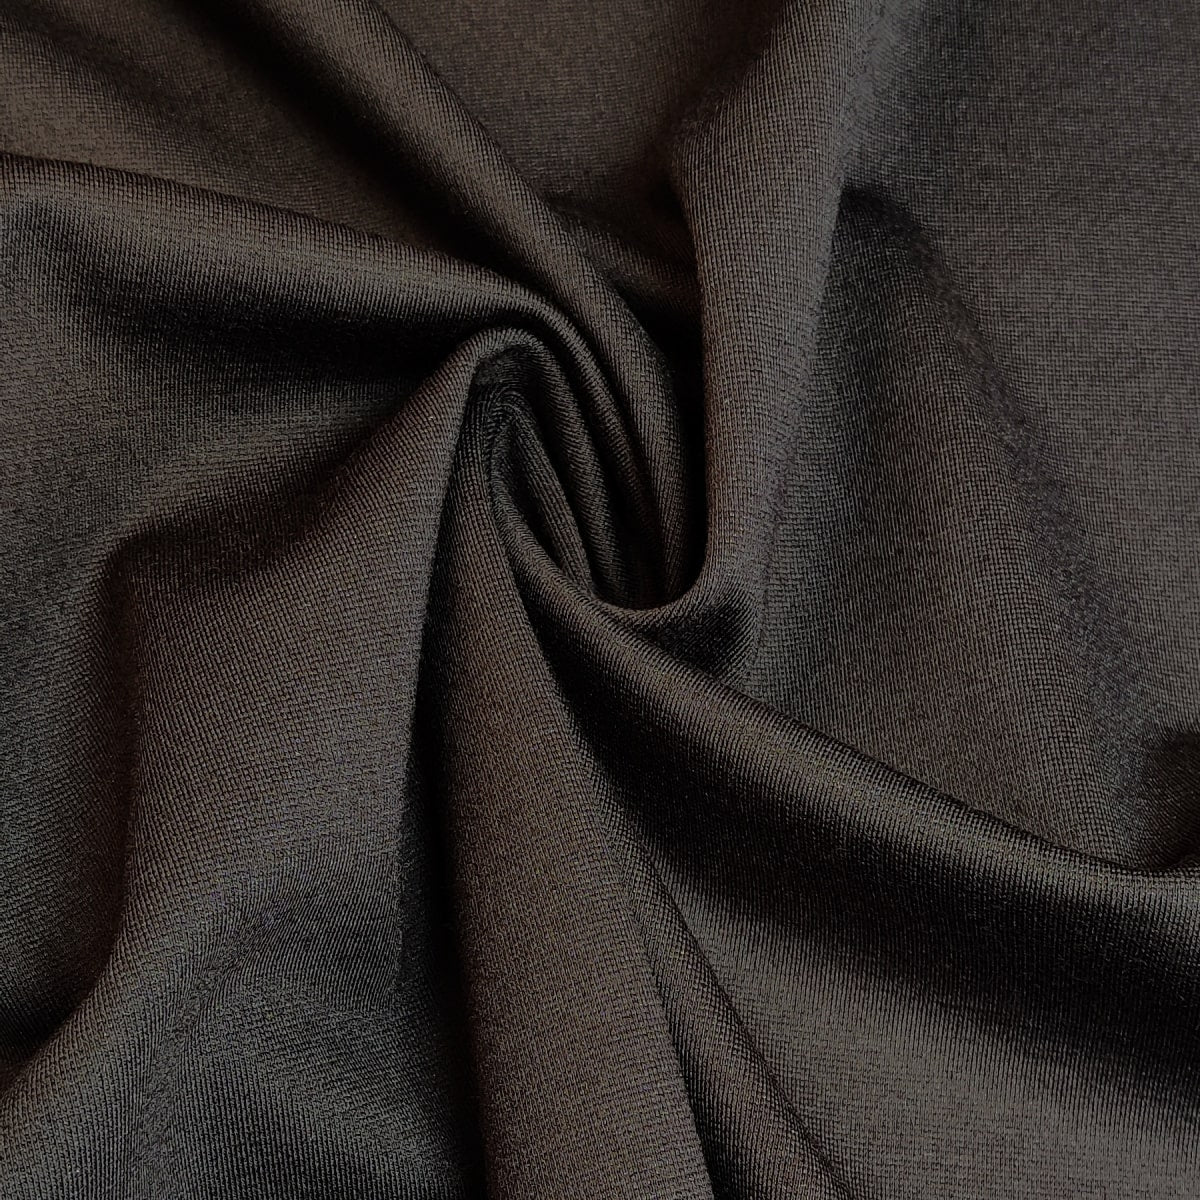 Nylon Ponte de Roma Fabric Black